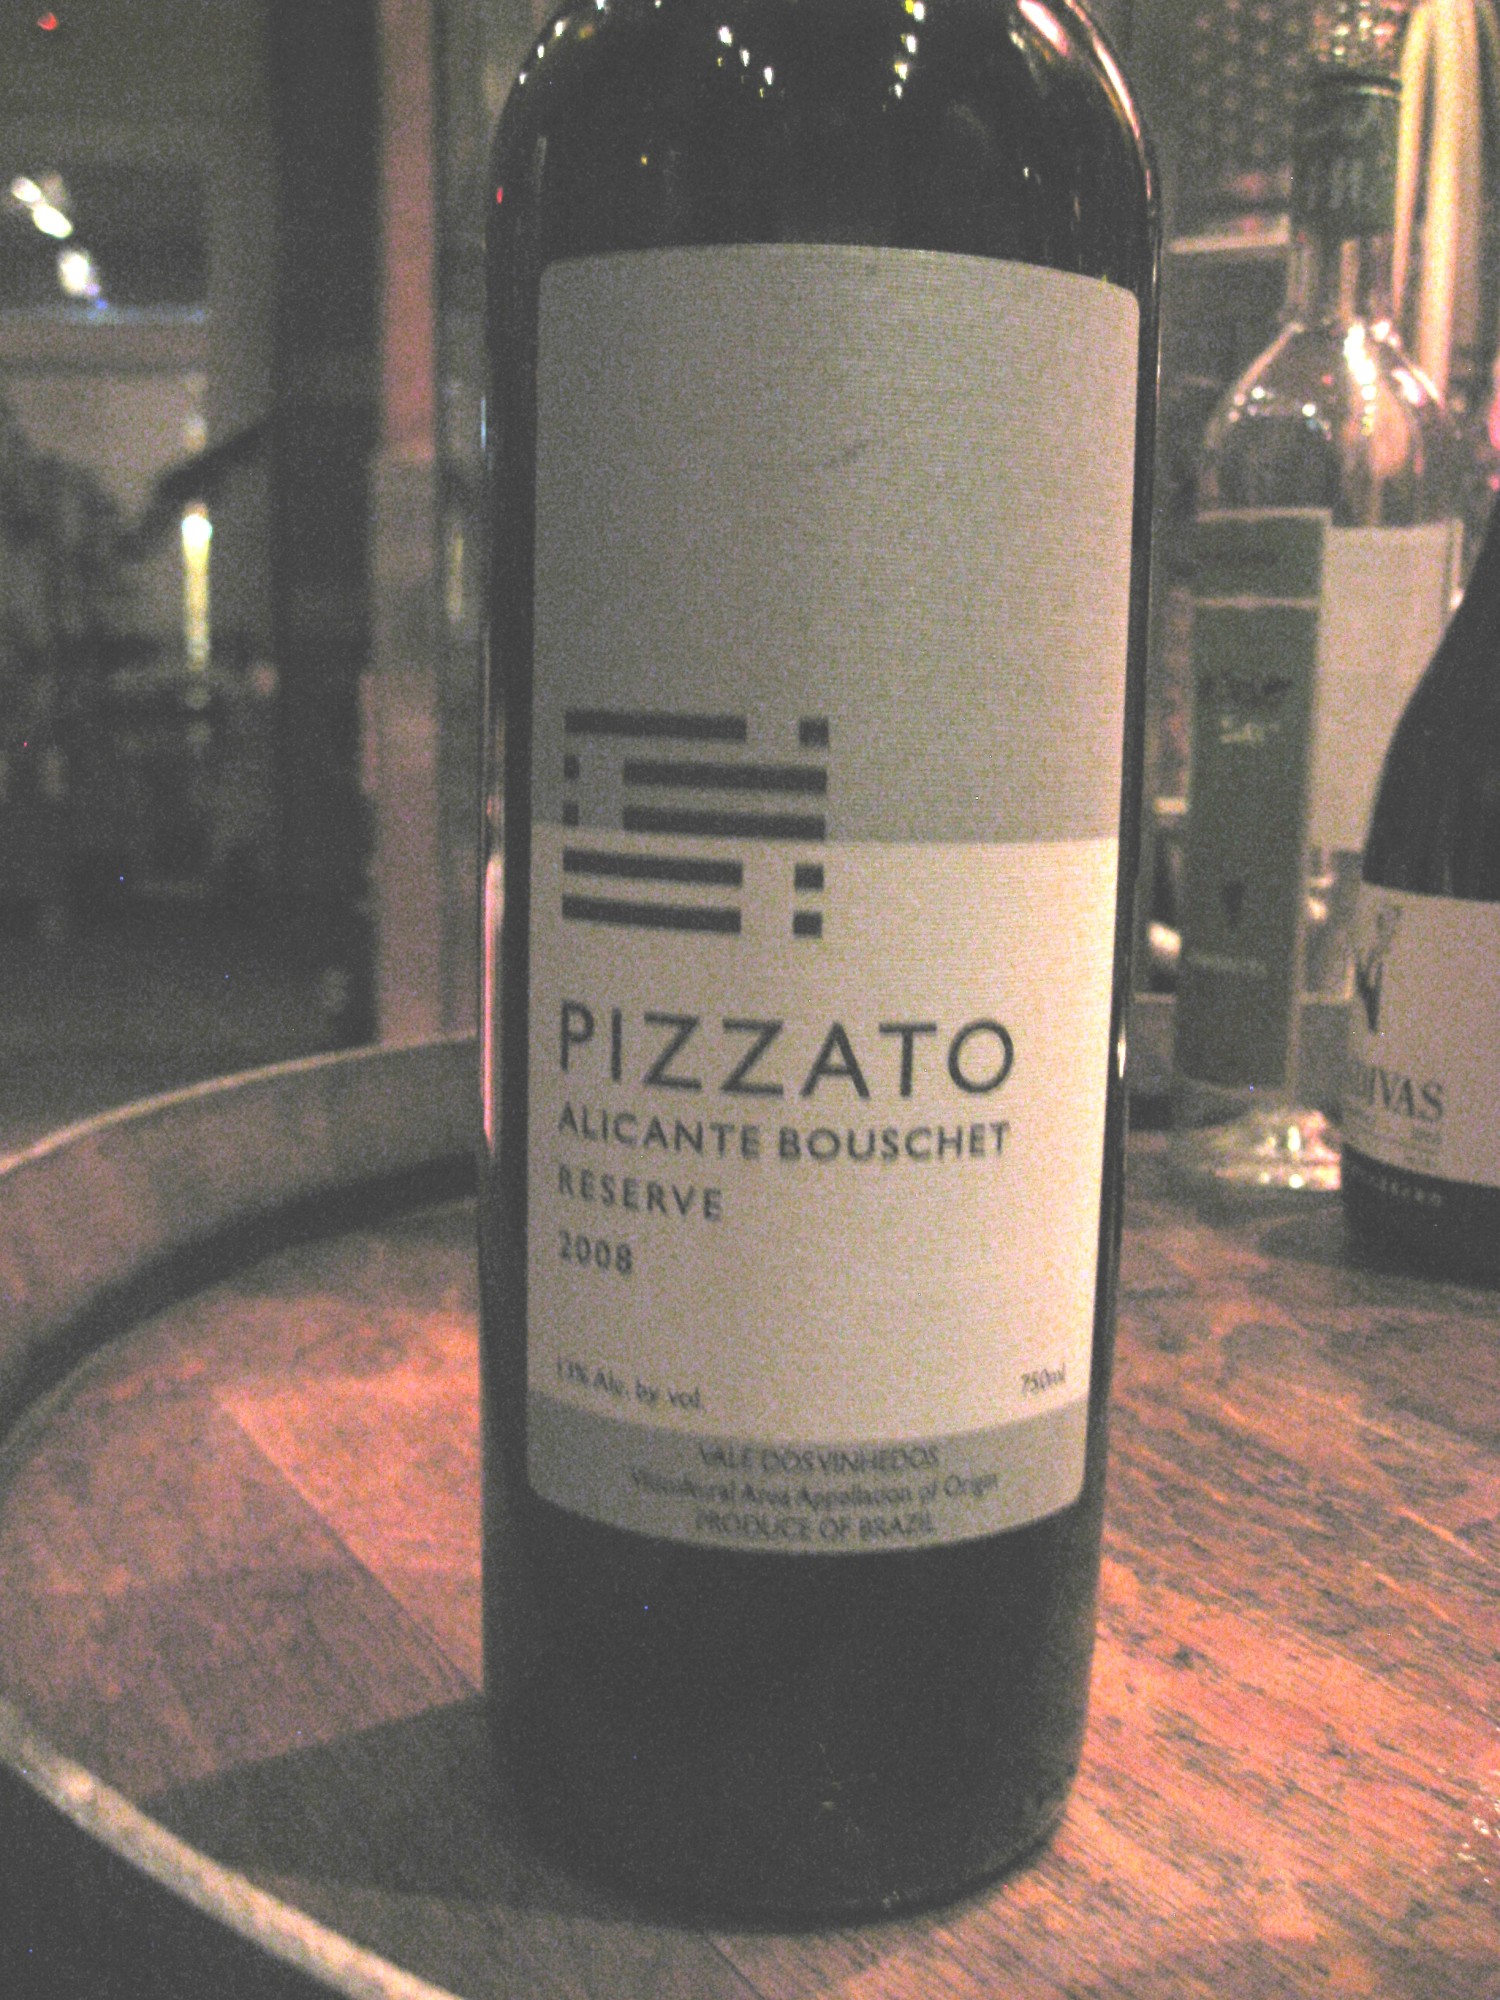 Pizzato, Alicante Bouschet Reserve 2013, Vale dos Vinehedos, Serra Gaucha, Brazil, Wine Casual